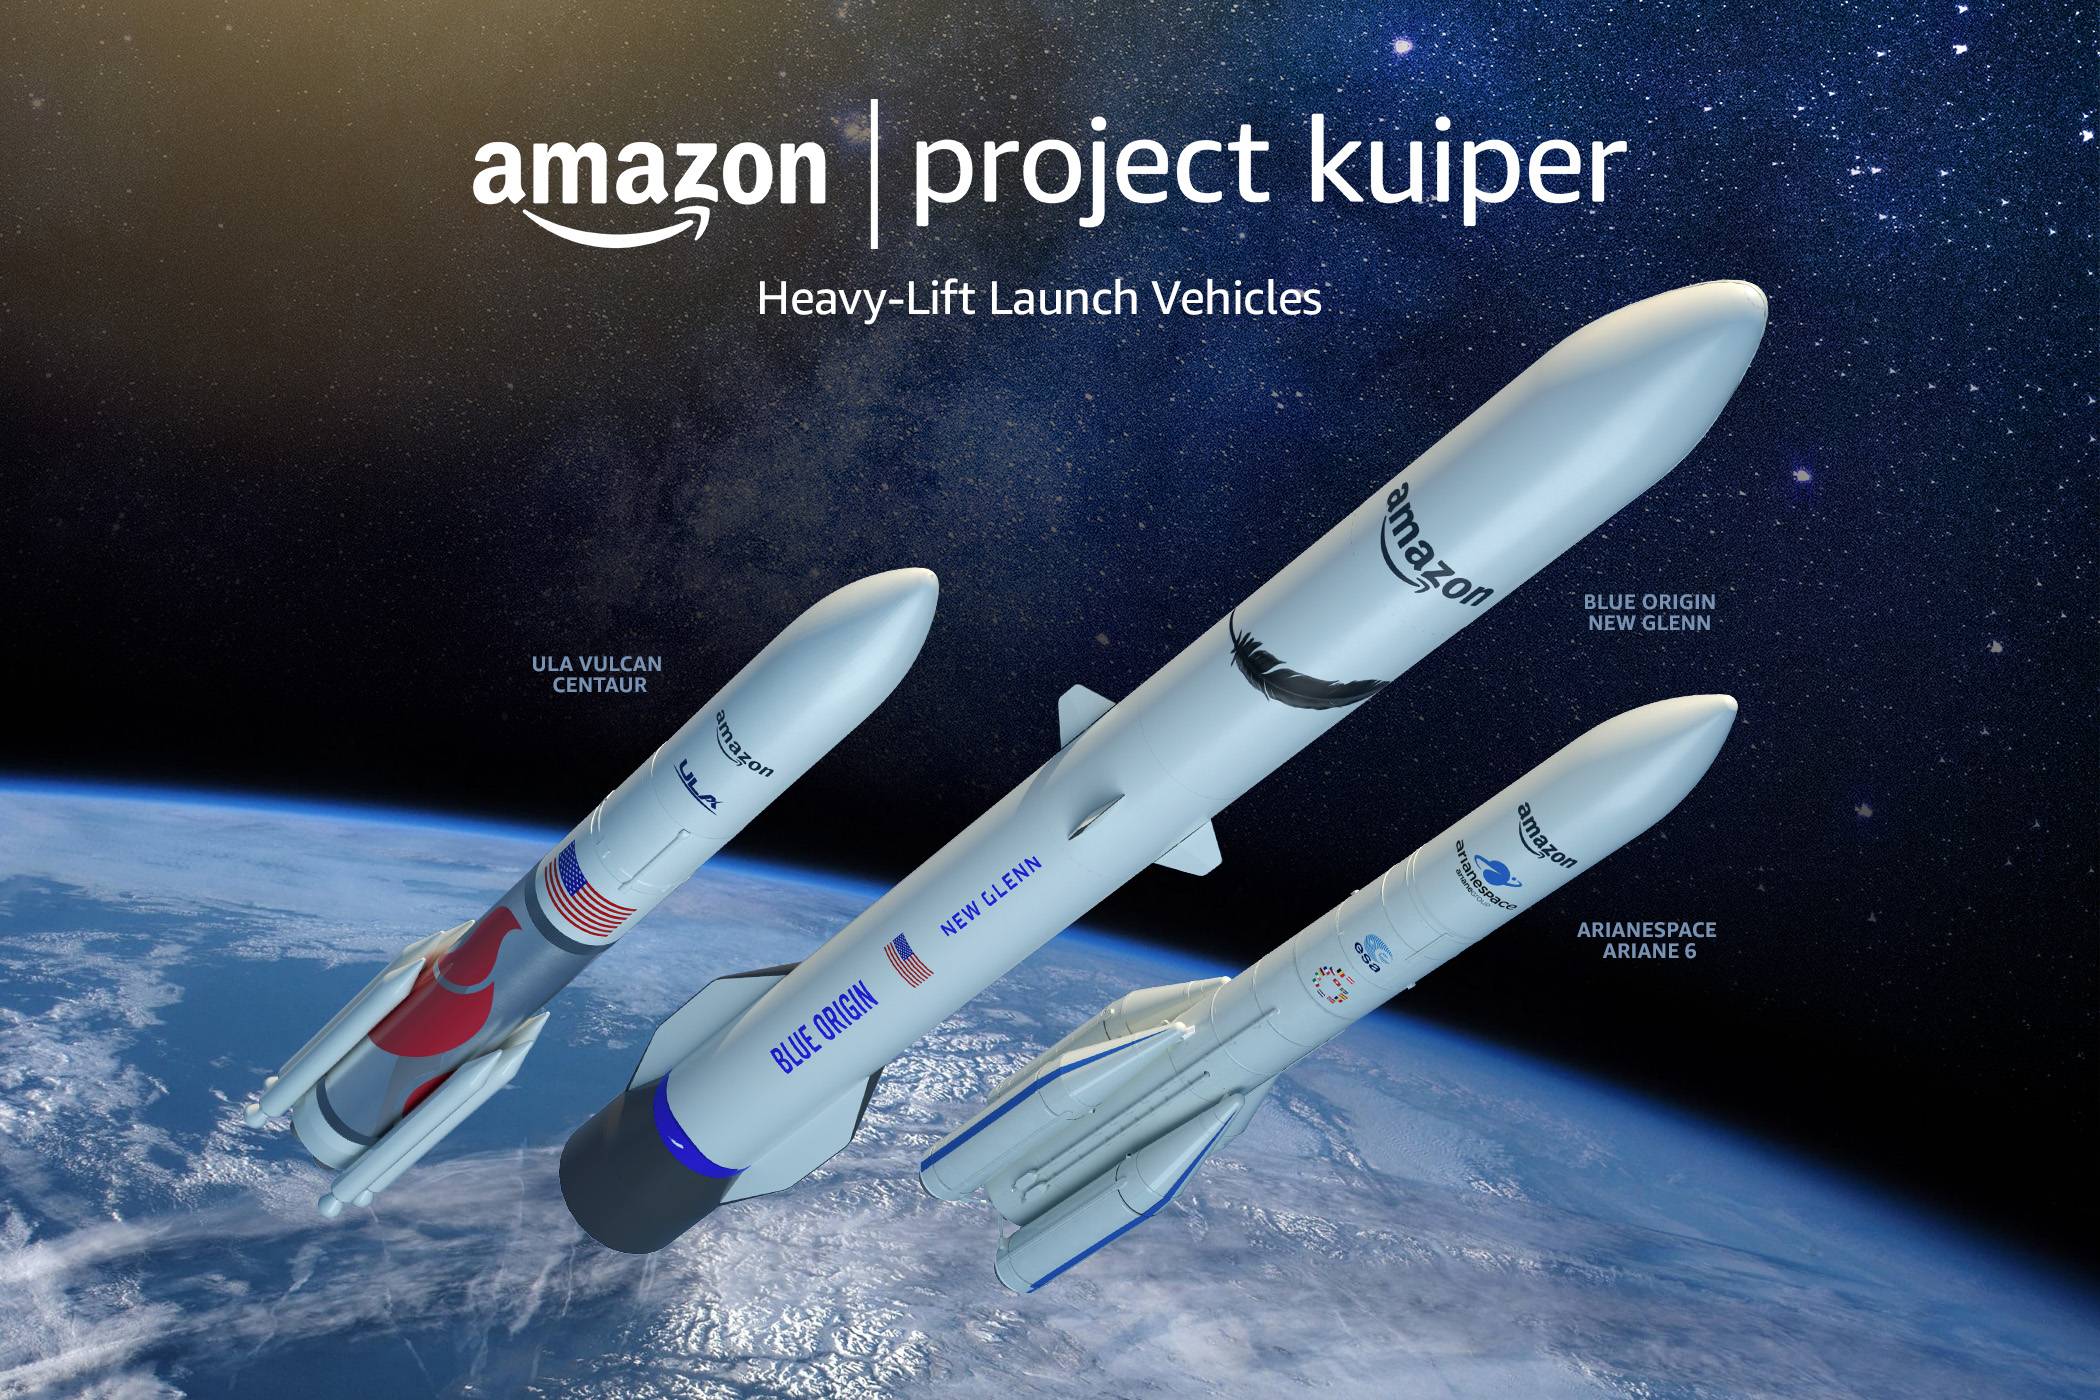 Project Kuiper Heavy Lift Launch Vehicles - Finalizzato il WWDC di Apple / Musk si unisce al consiglio di Twitter / Amazon formerà Internet via satellite